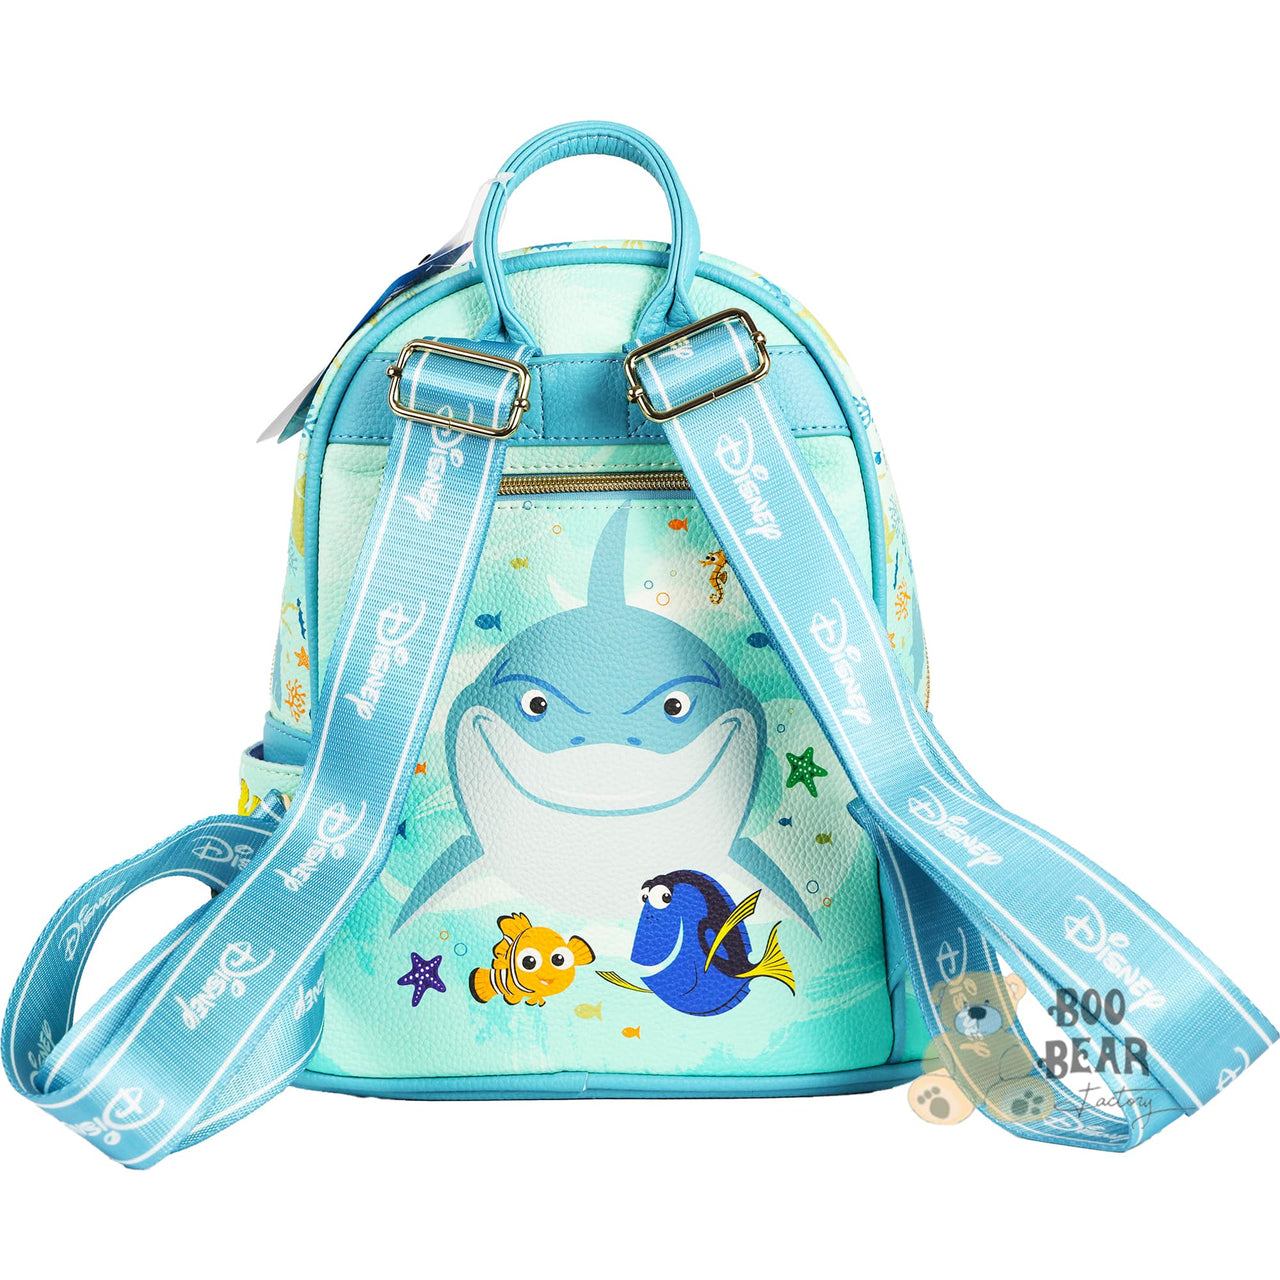 Disney Pixar Finding Nemo Backpack  bacview